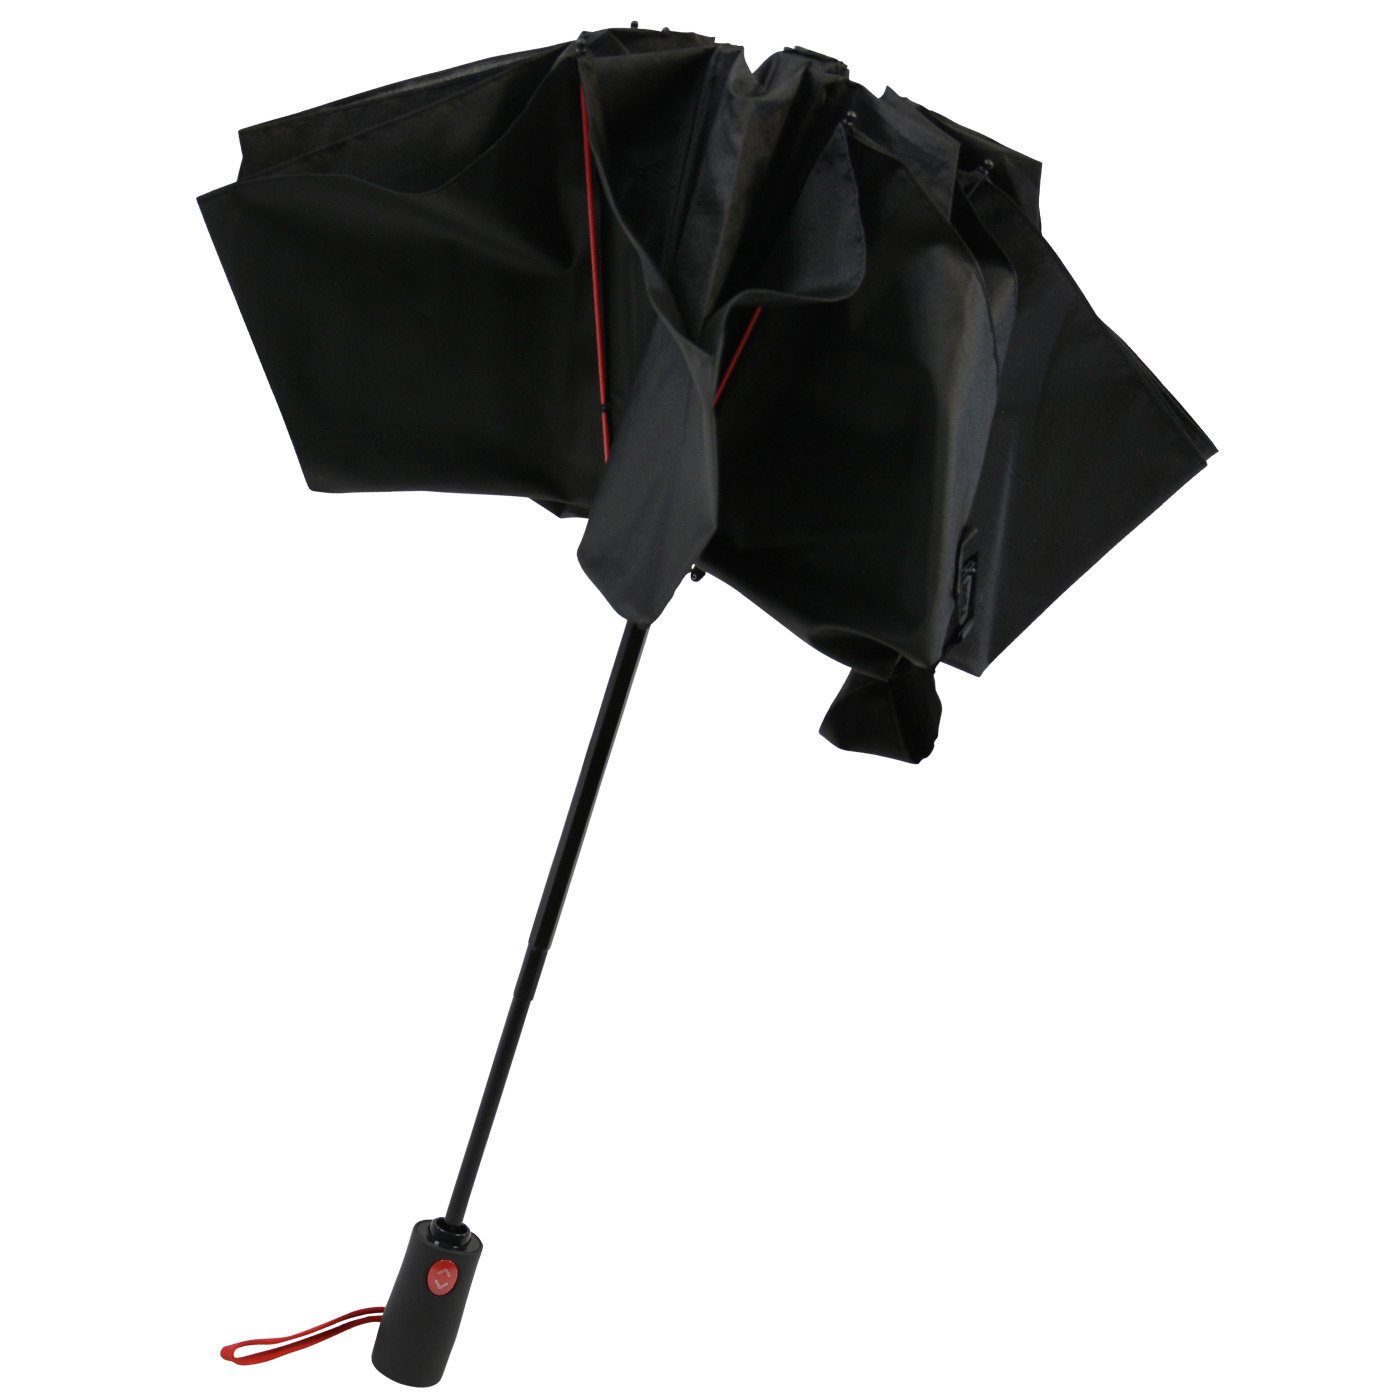 Fiberglas-Automatiksch, bunten Speichen Reverse öffnender schwarz-rot iX-brella umgekehrt stabilen mit Taschenregenschirm